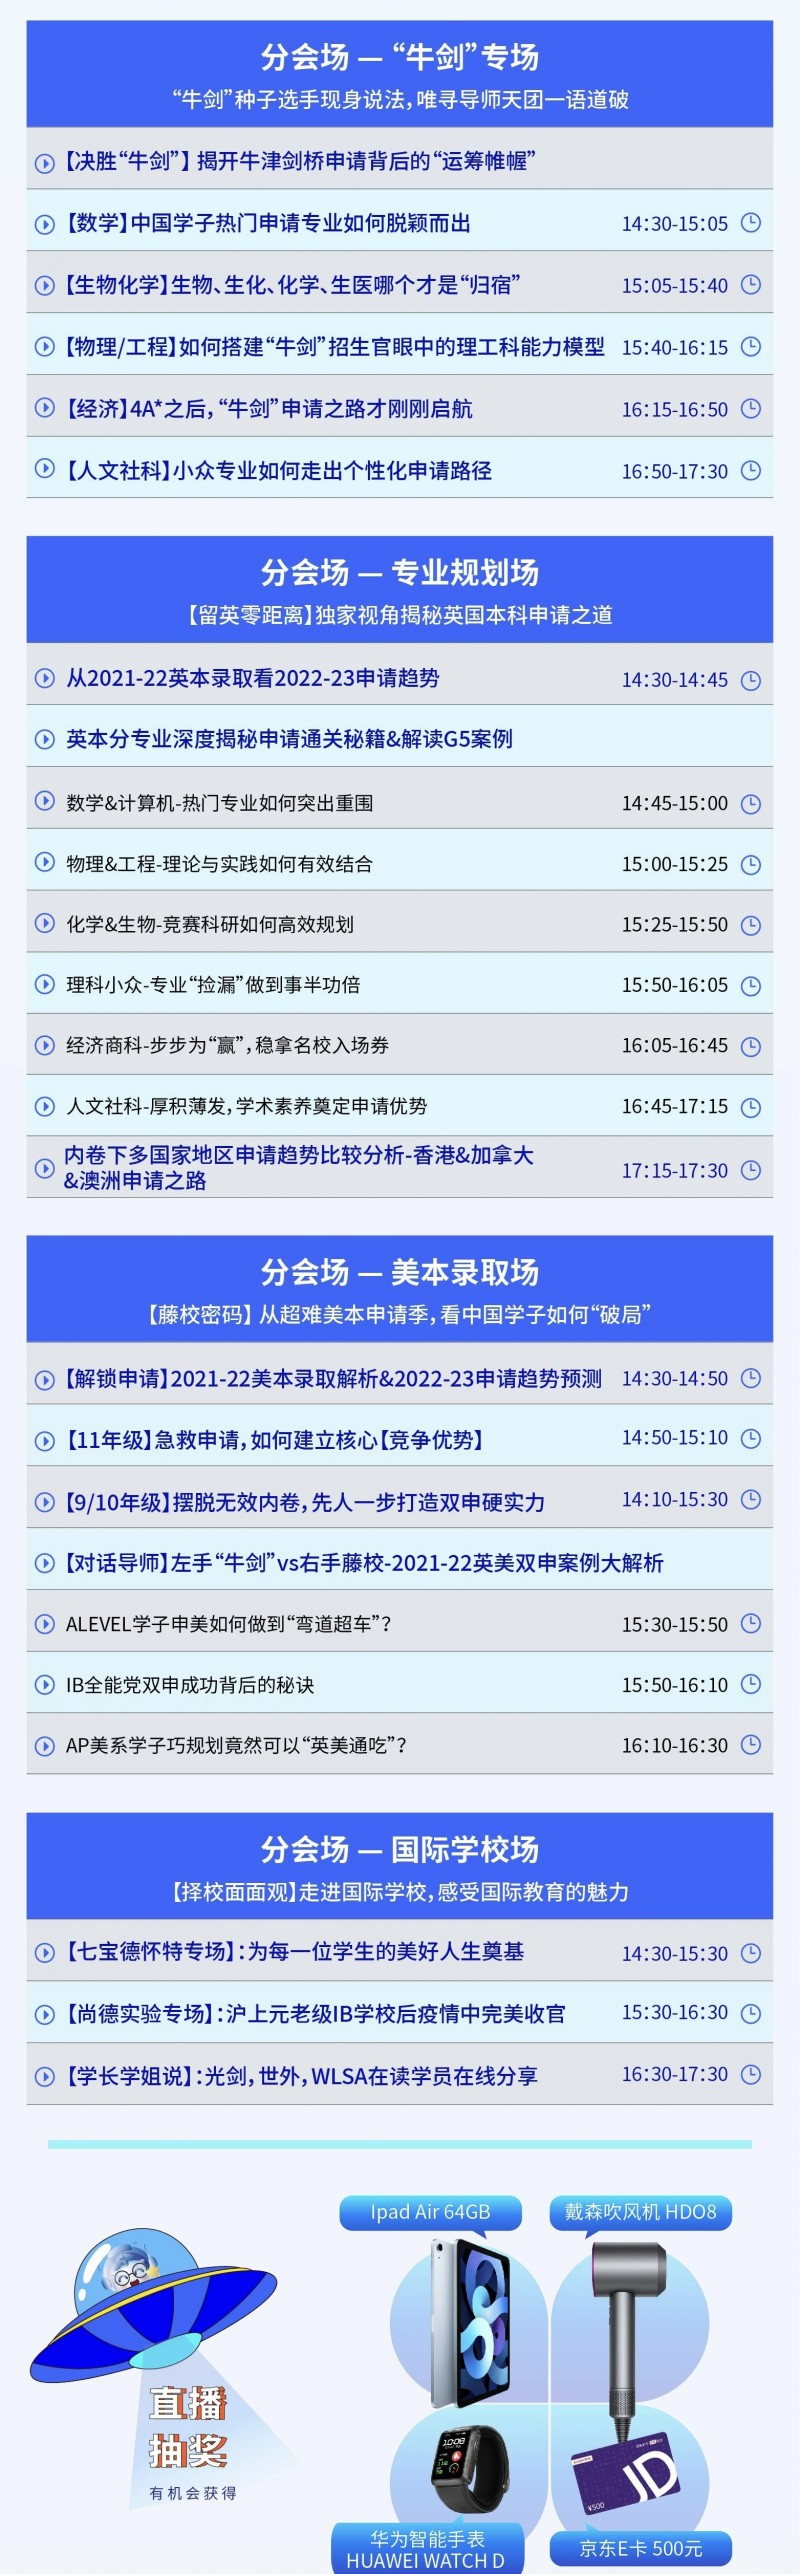 上海国际学校面试问题英文版来了  赶紧准备这些常见问题内容图片_4